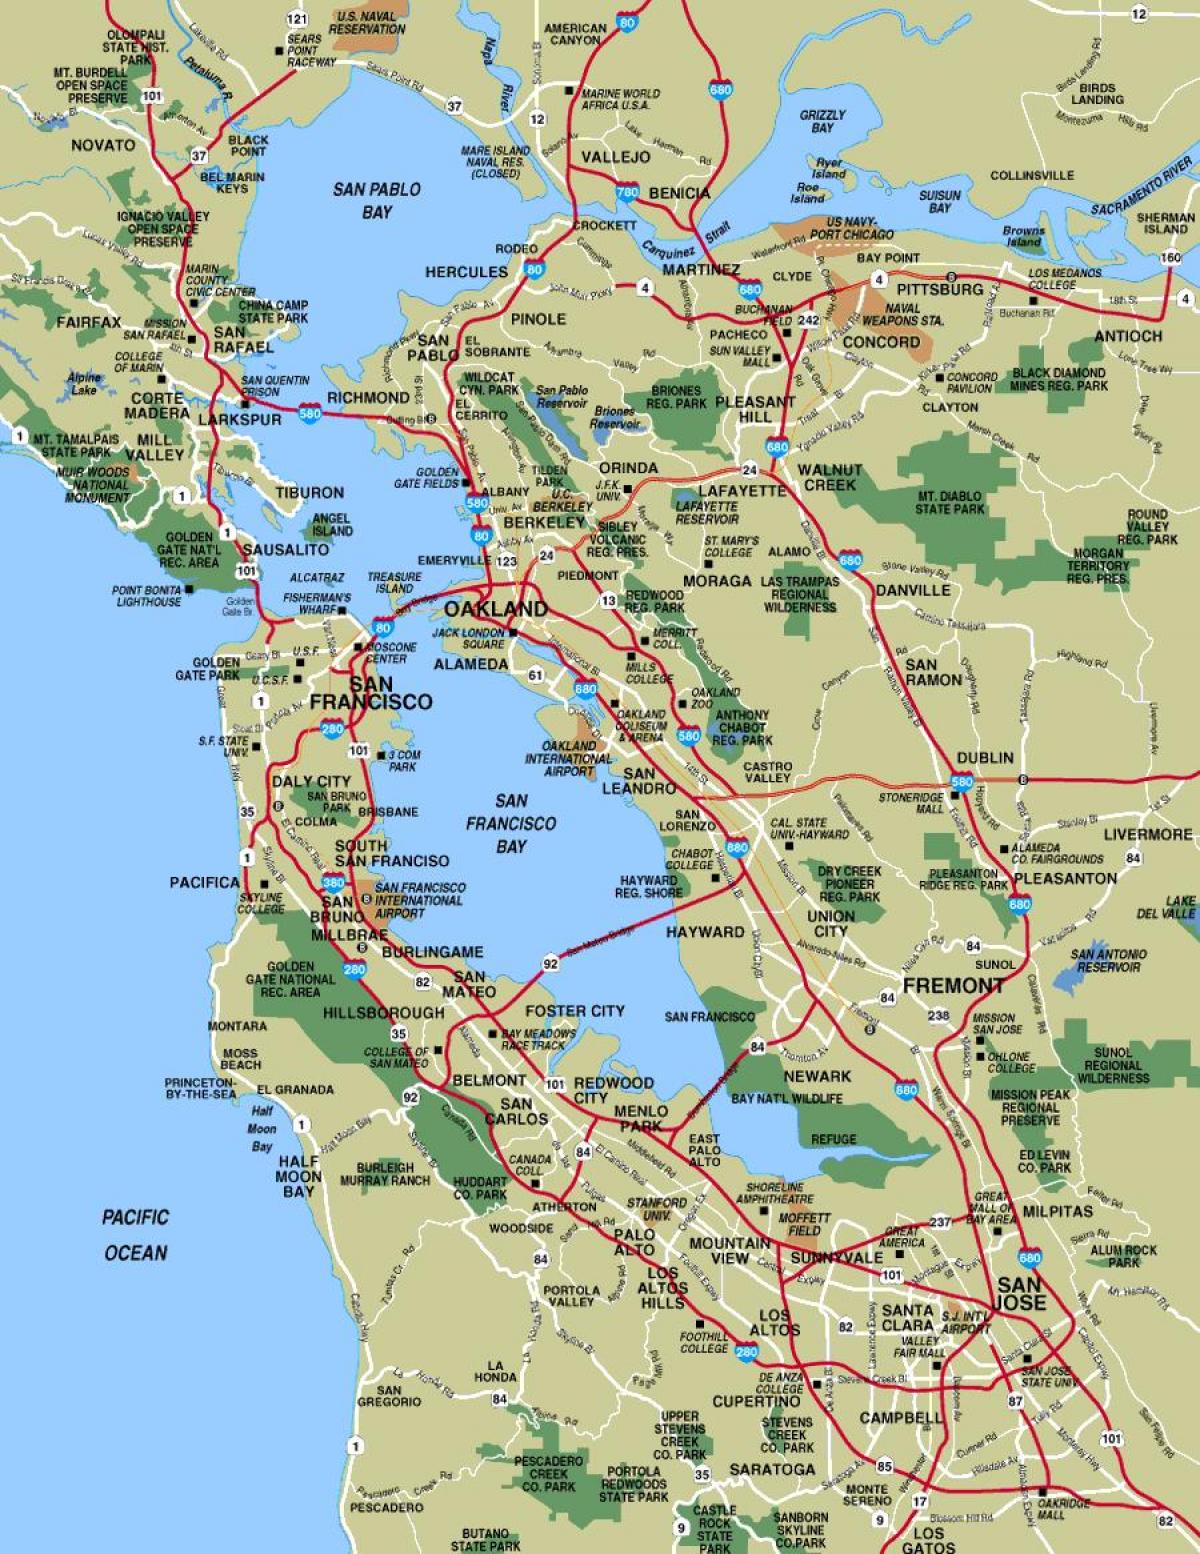 мапа града Сан франциска